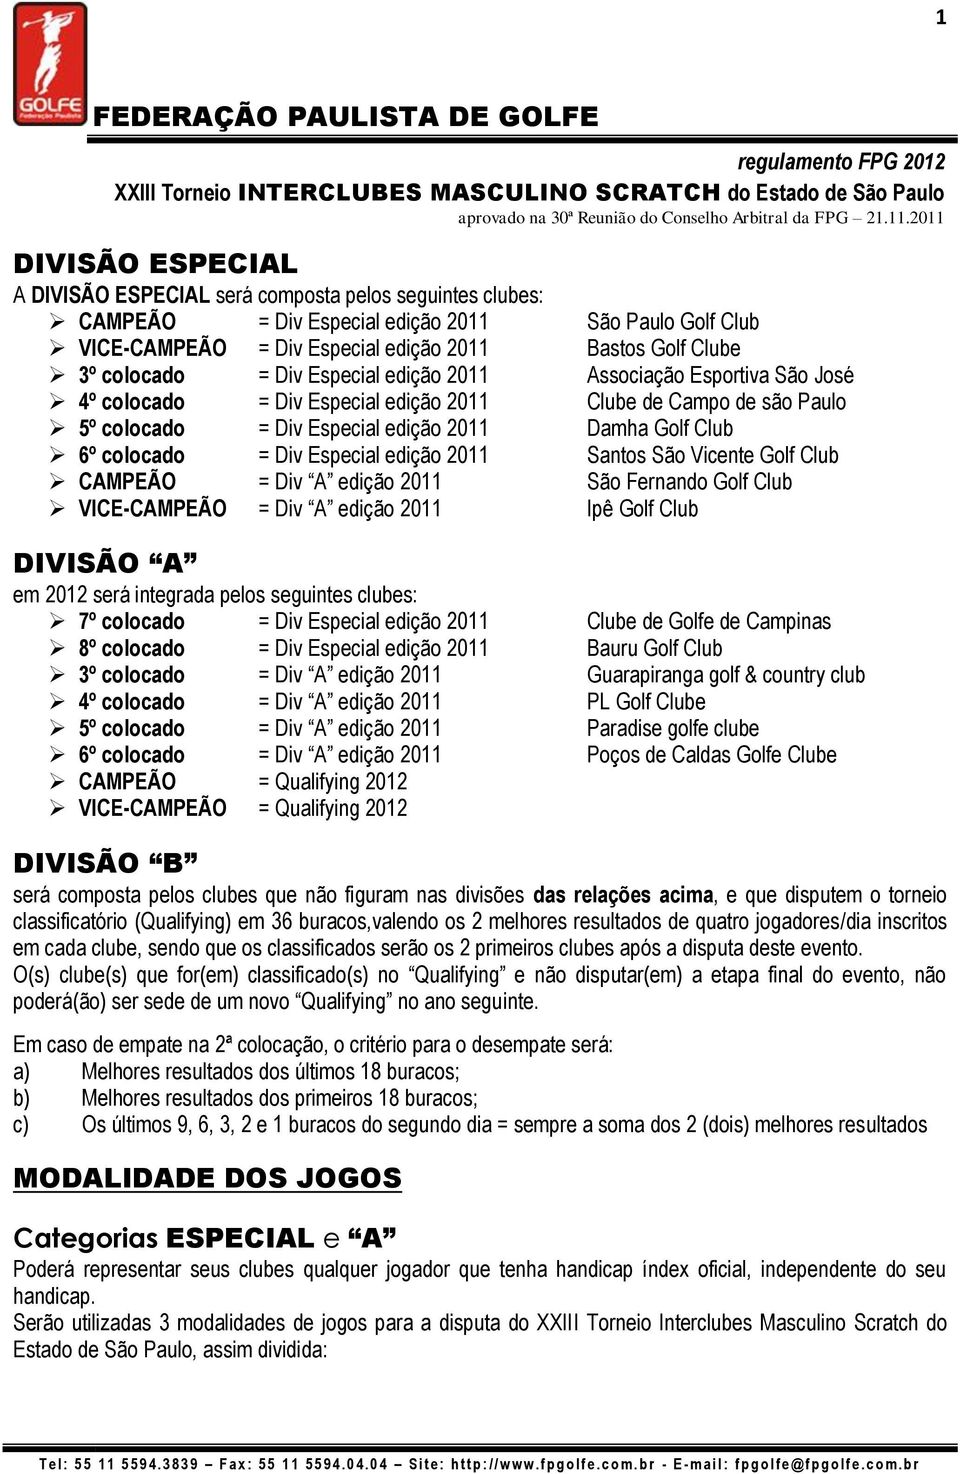 = Div Especial edição 2011 Santos São Vicente Golf Club CAMPEÃO = Div A edição 2011 São Fernando Golf Club VICE-CAMPEÃO = Div A edição 2011 Ipê Golf Club DIVISÃO A em 2012 será integrada pelos